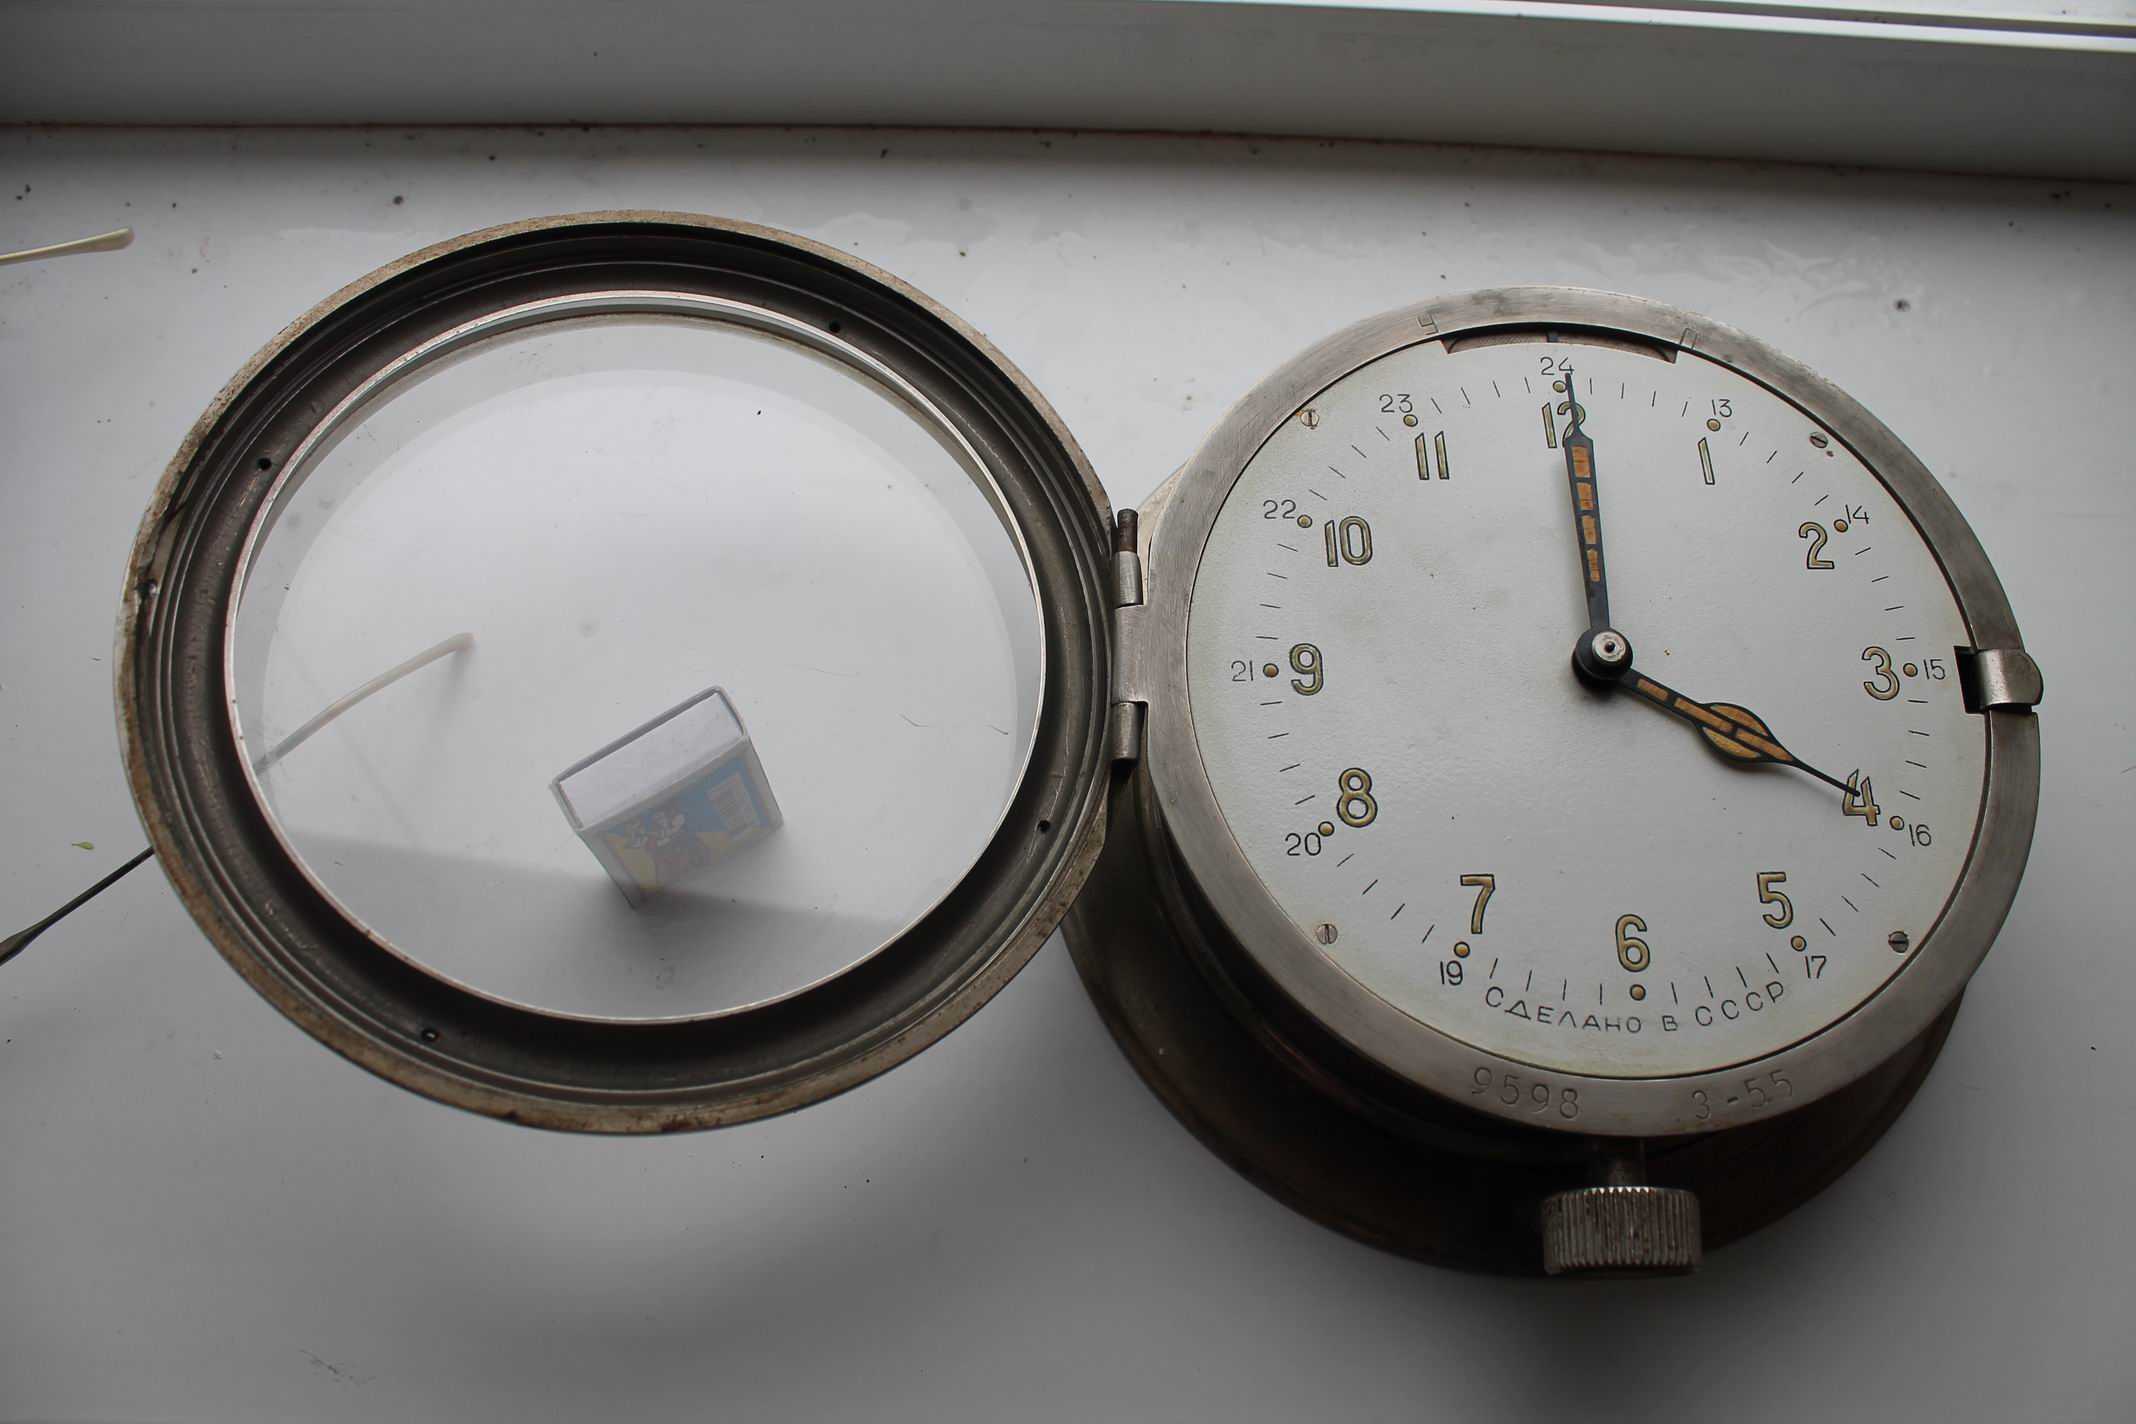 ЧМ (часы морские). 1955 год